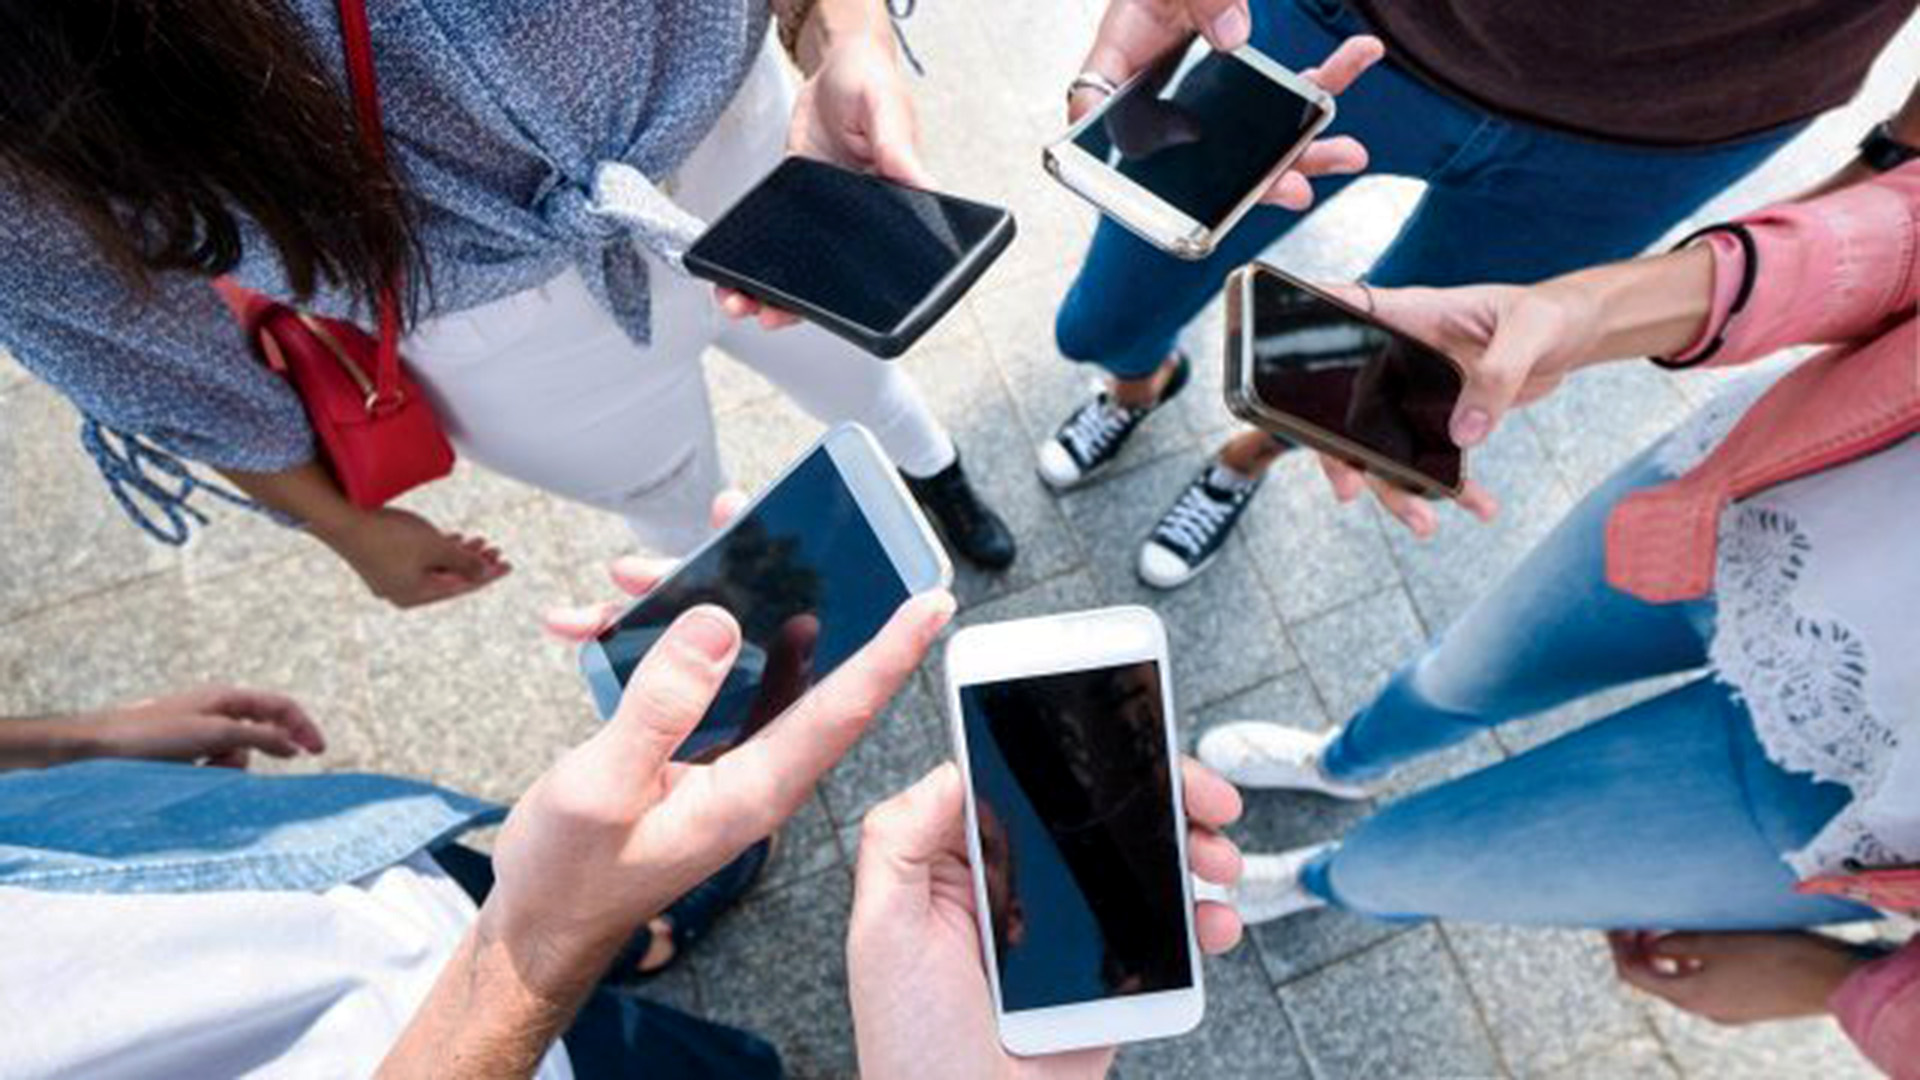 Especialista norteamericana advierte que uso de celulares en salas de clases requiere regulación